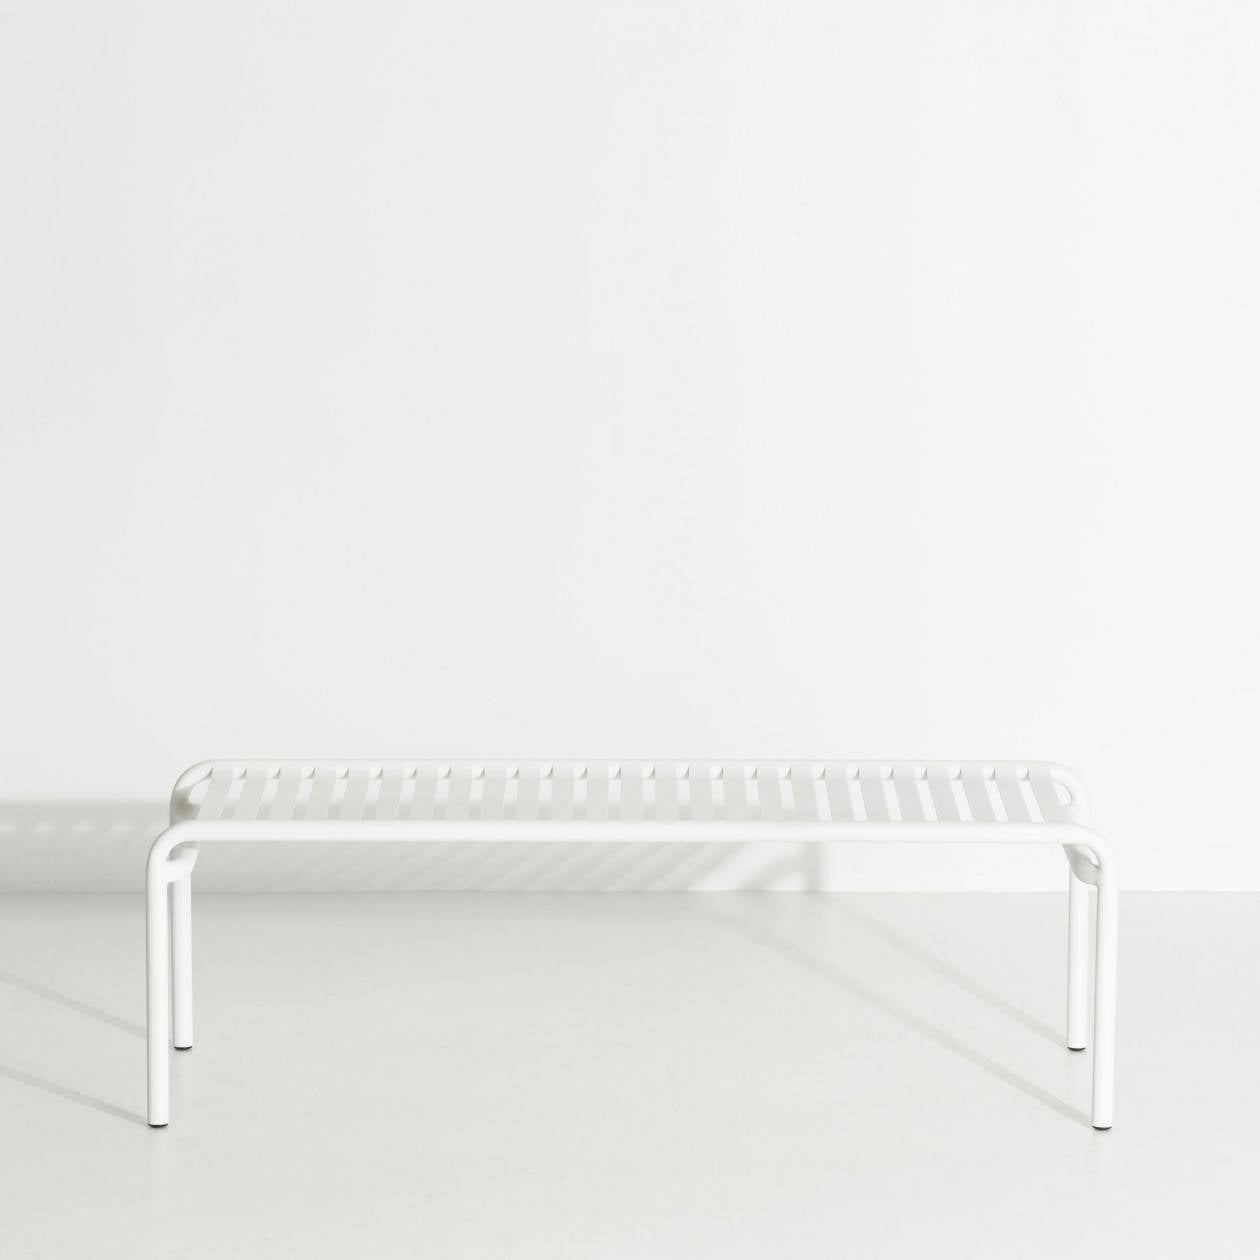 Week-End Coffee Table large in White präsentiert im Onlineshop von KAQTU Design AG. Beistelltisch Outdoor ist von Petite Friture